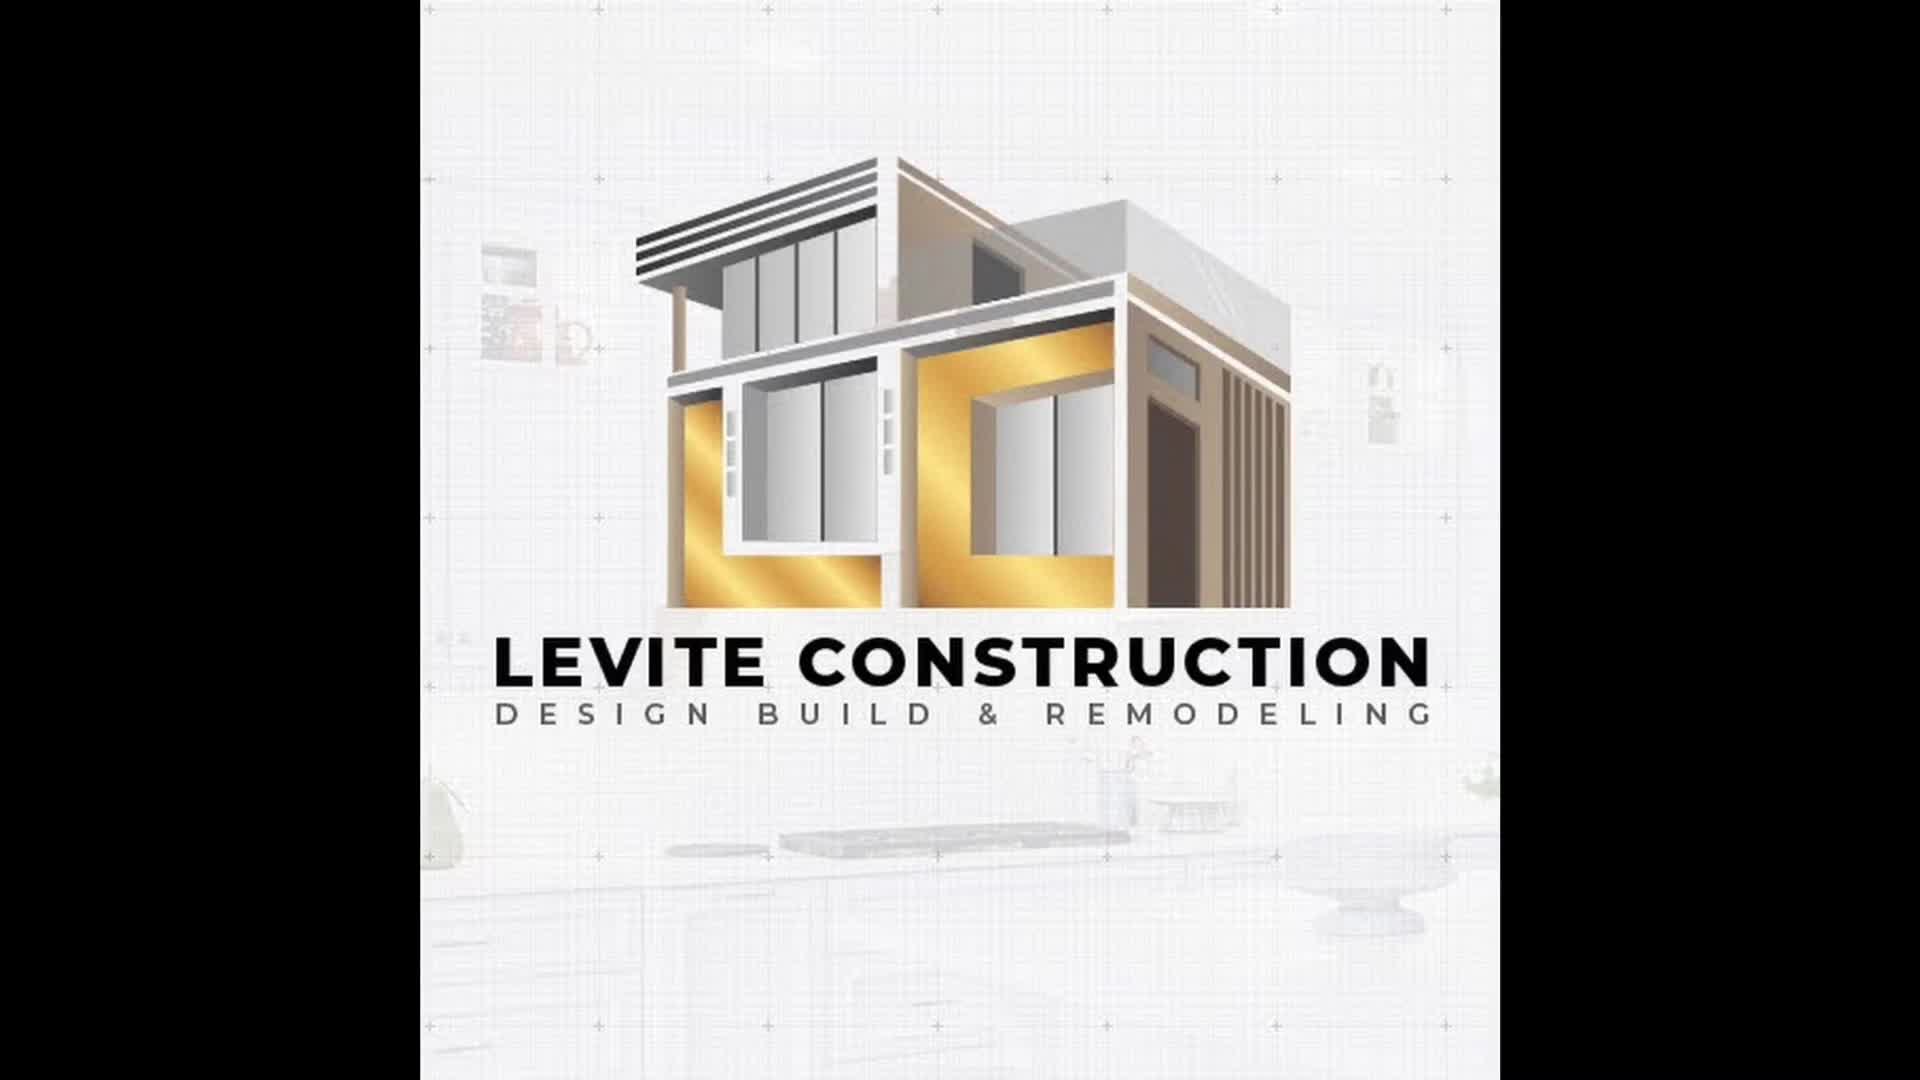 Levite Construction